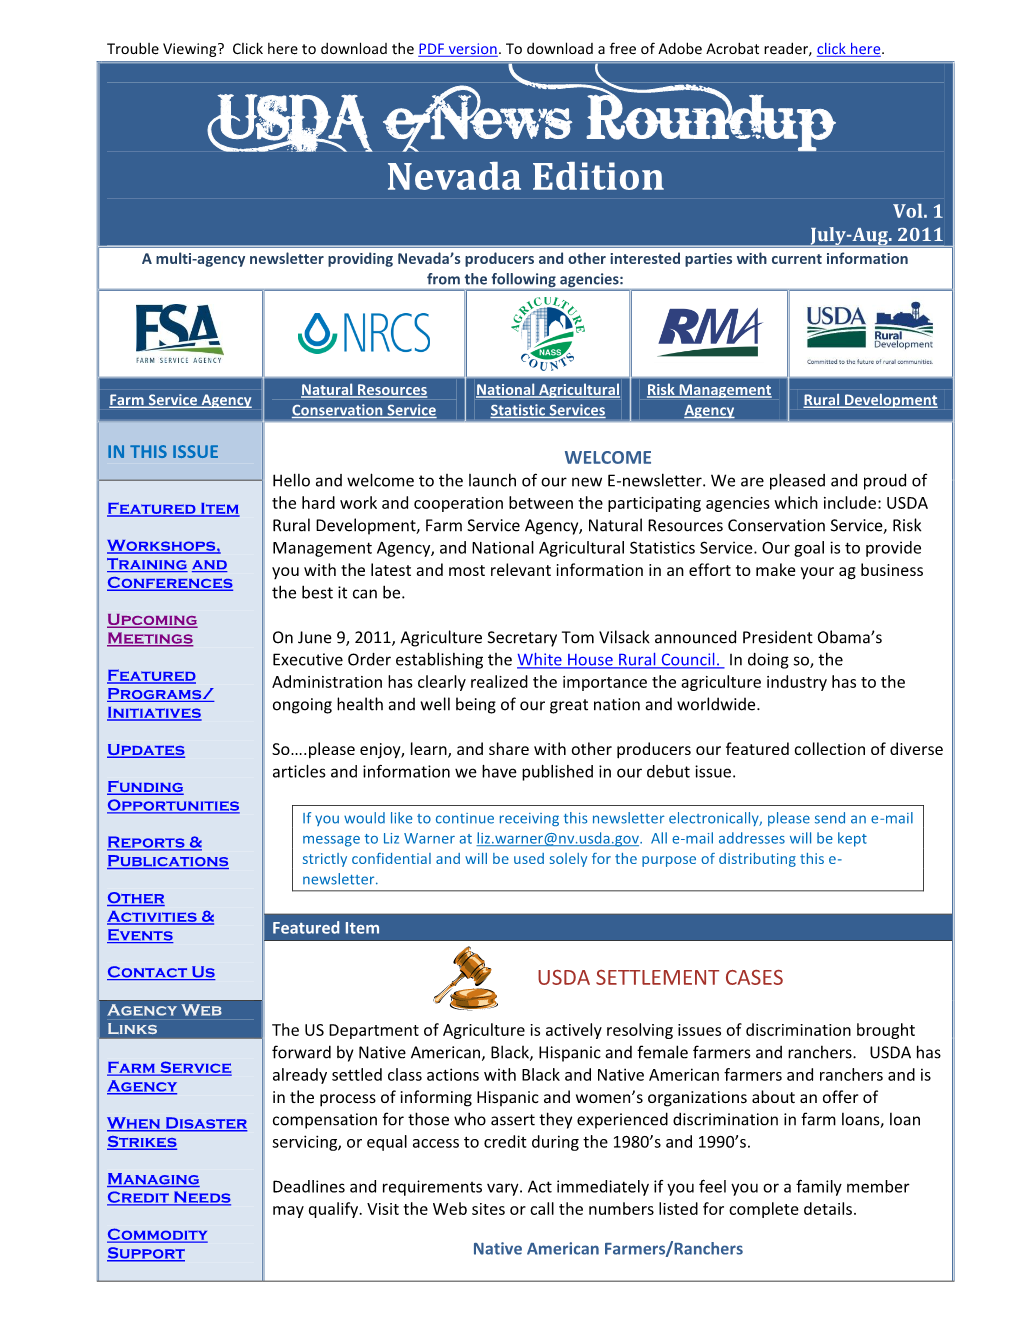 USDA E-News Roundup Nevada Edition Vol